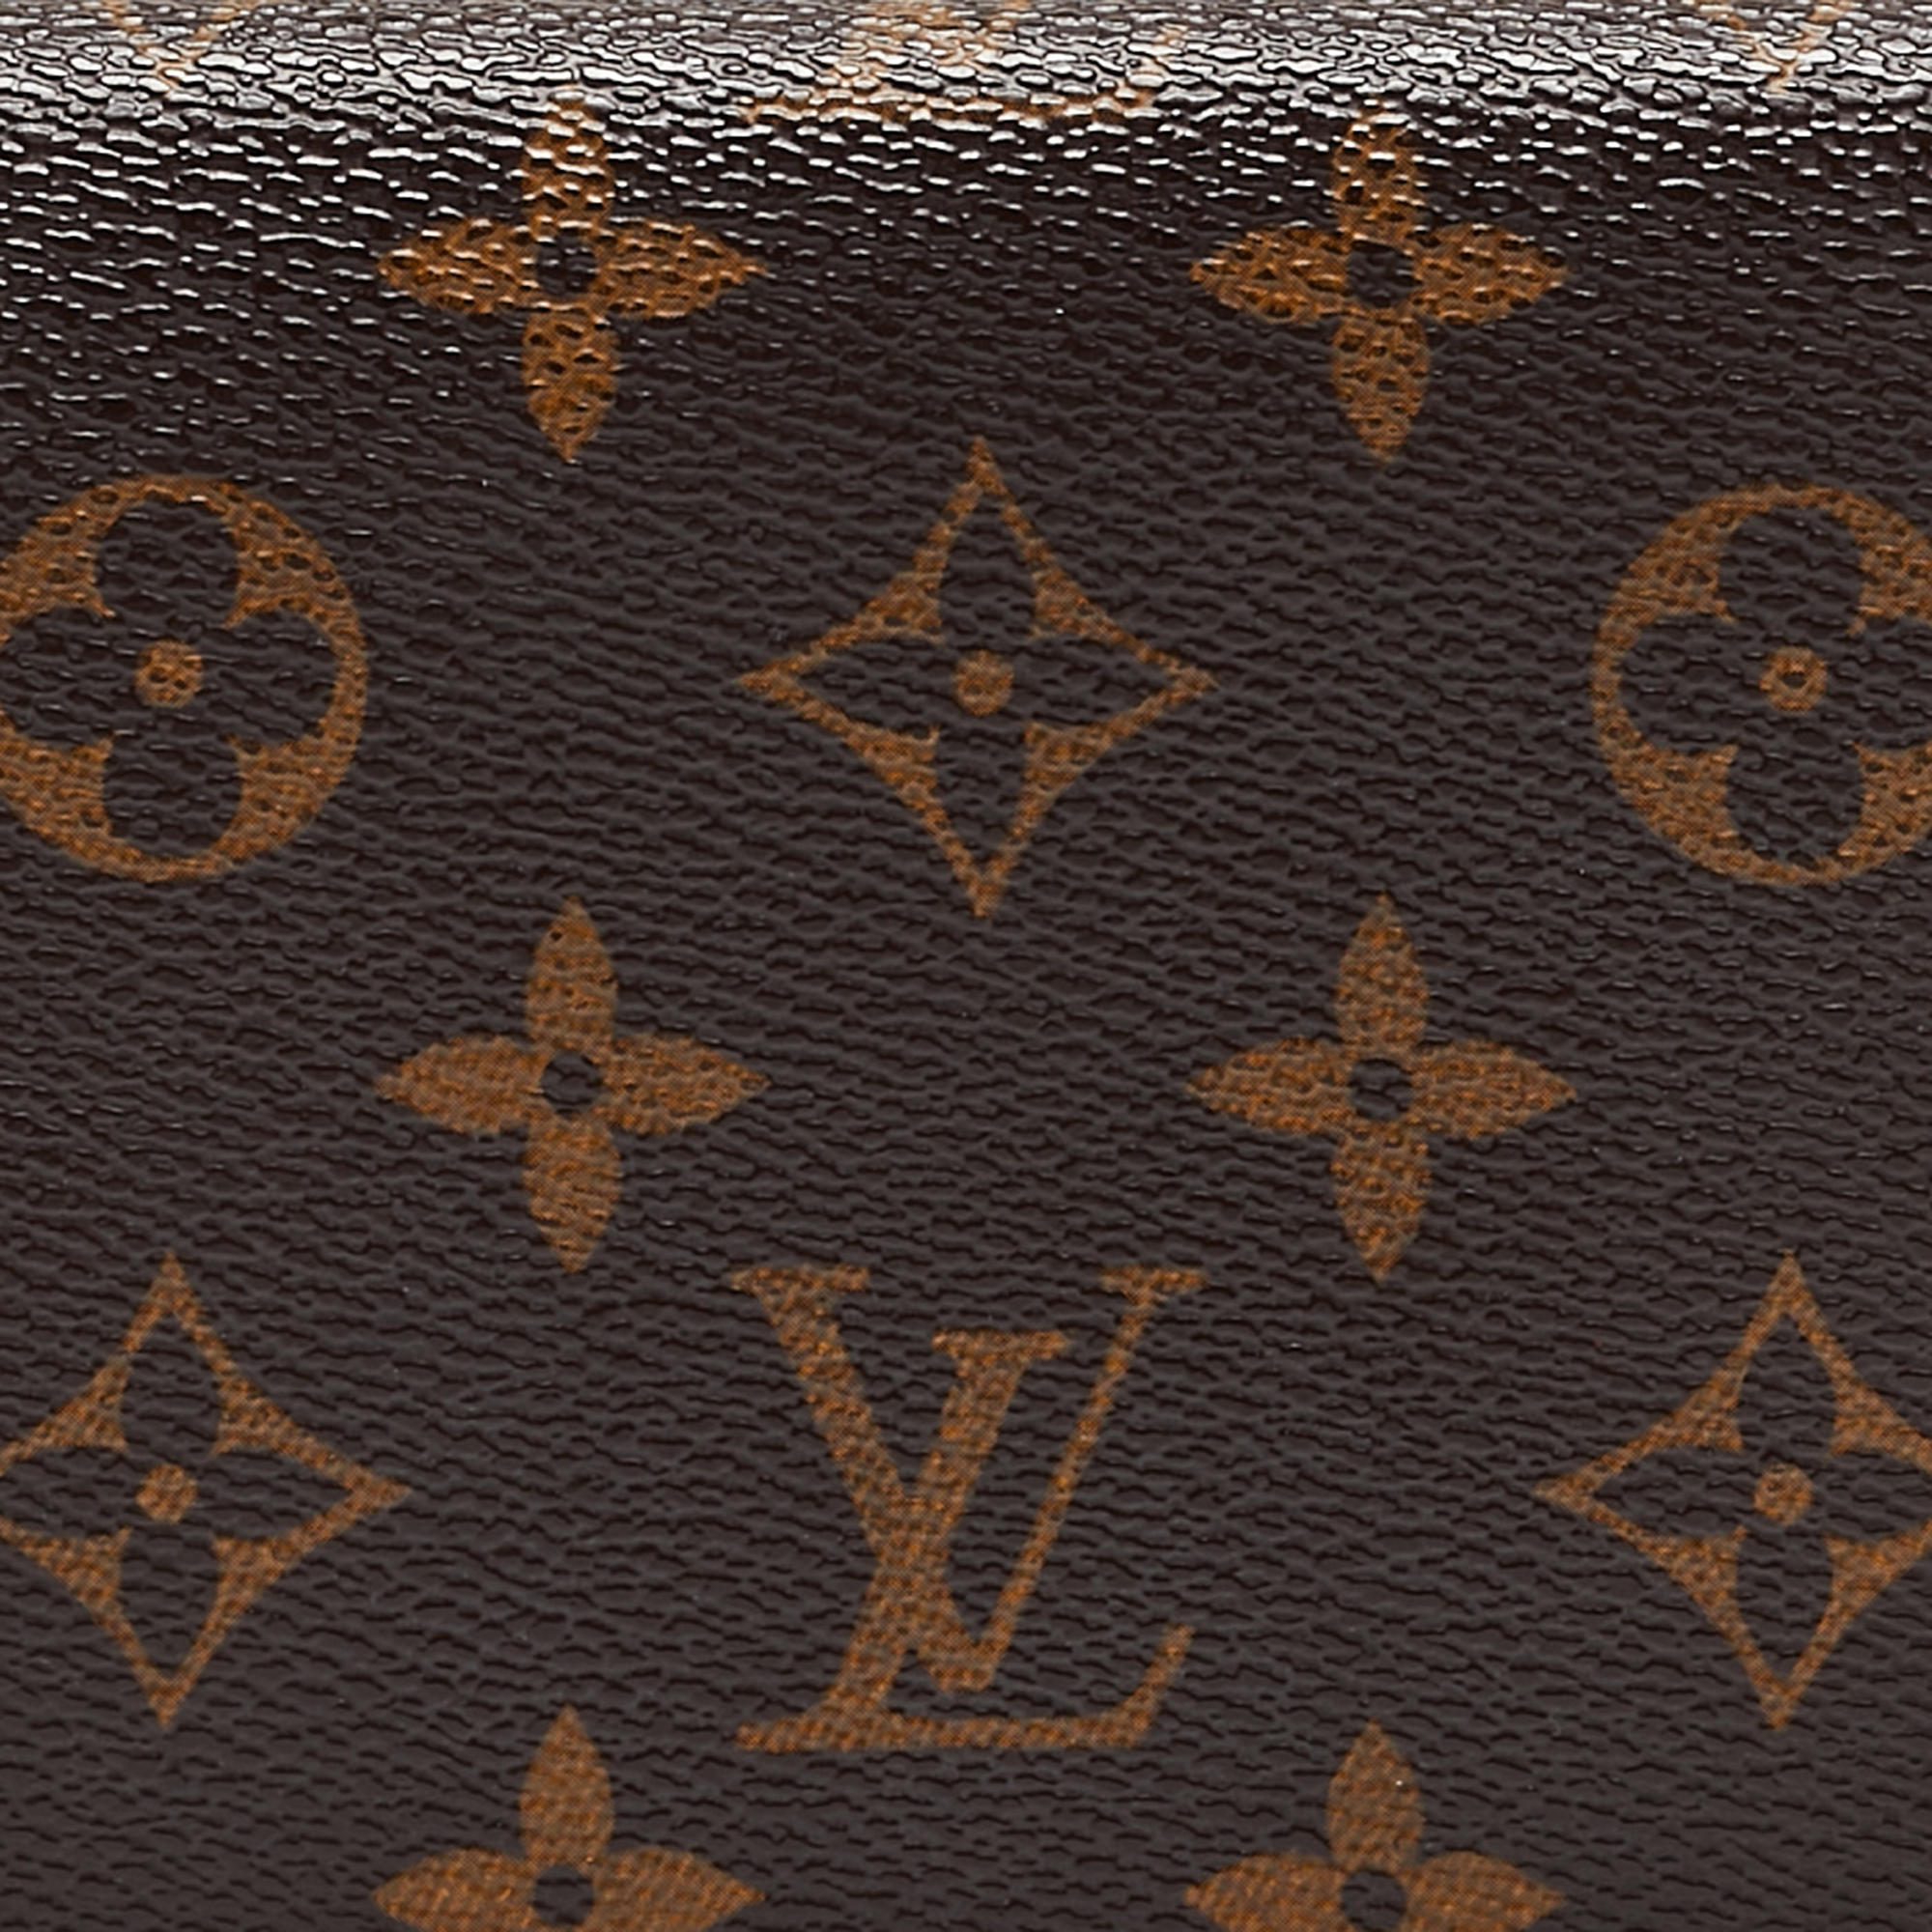 Louis Vuitton Monogram Canvas Insolite Wallet